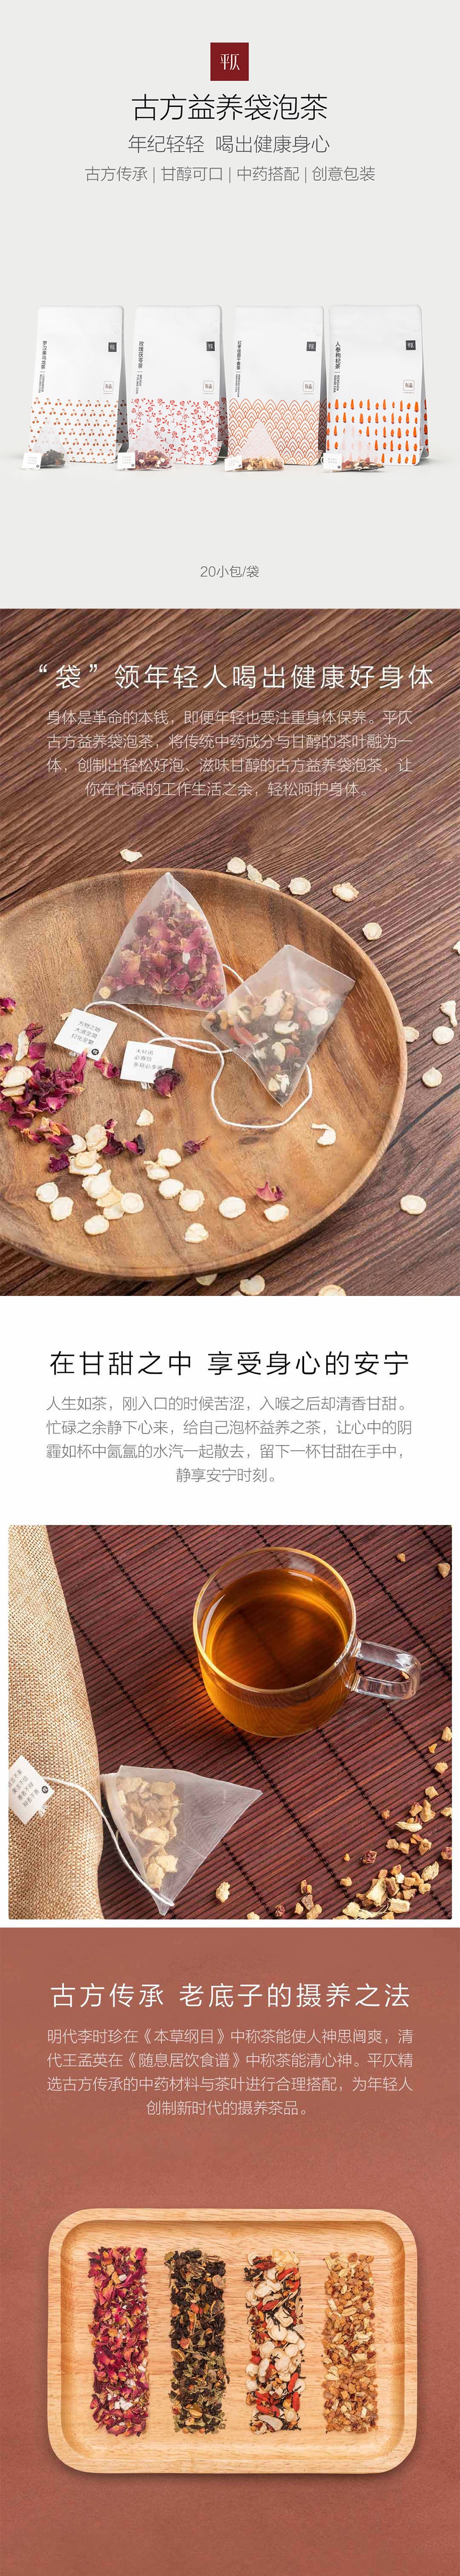 XIAOMI YOUPIN Red Dates Longan dried ginger tea 5g*20